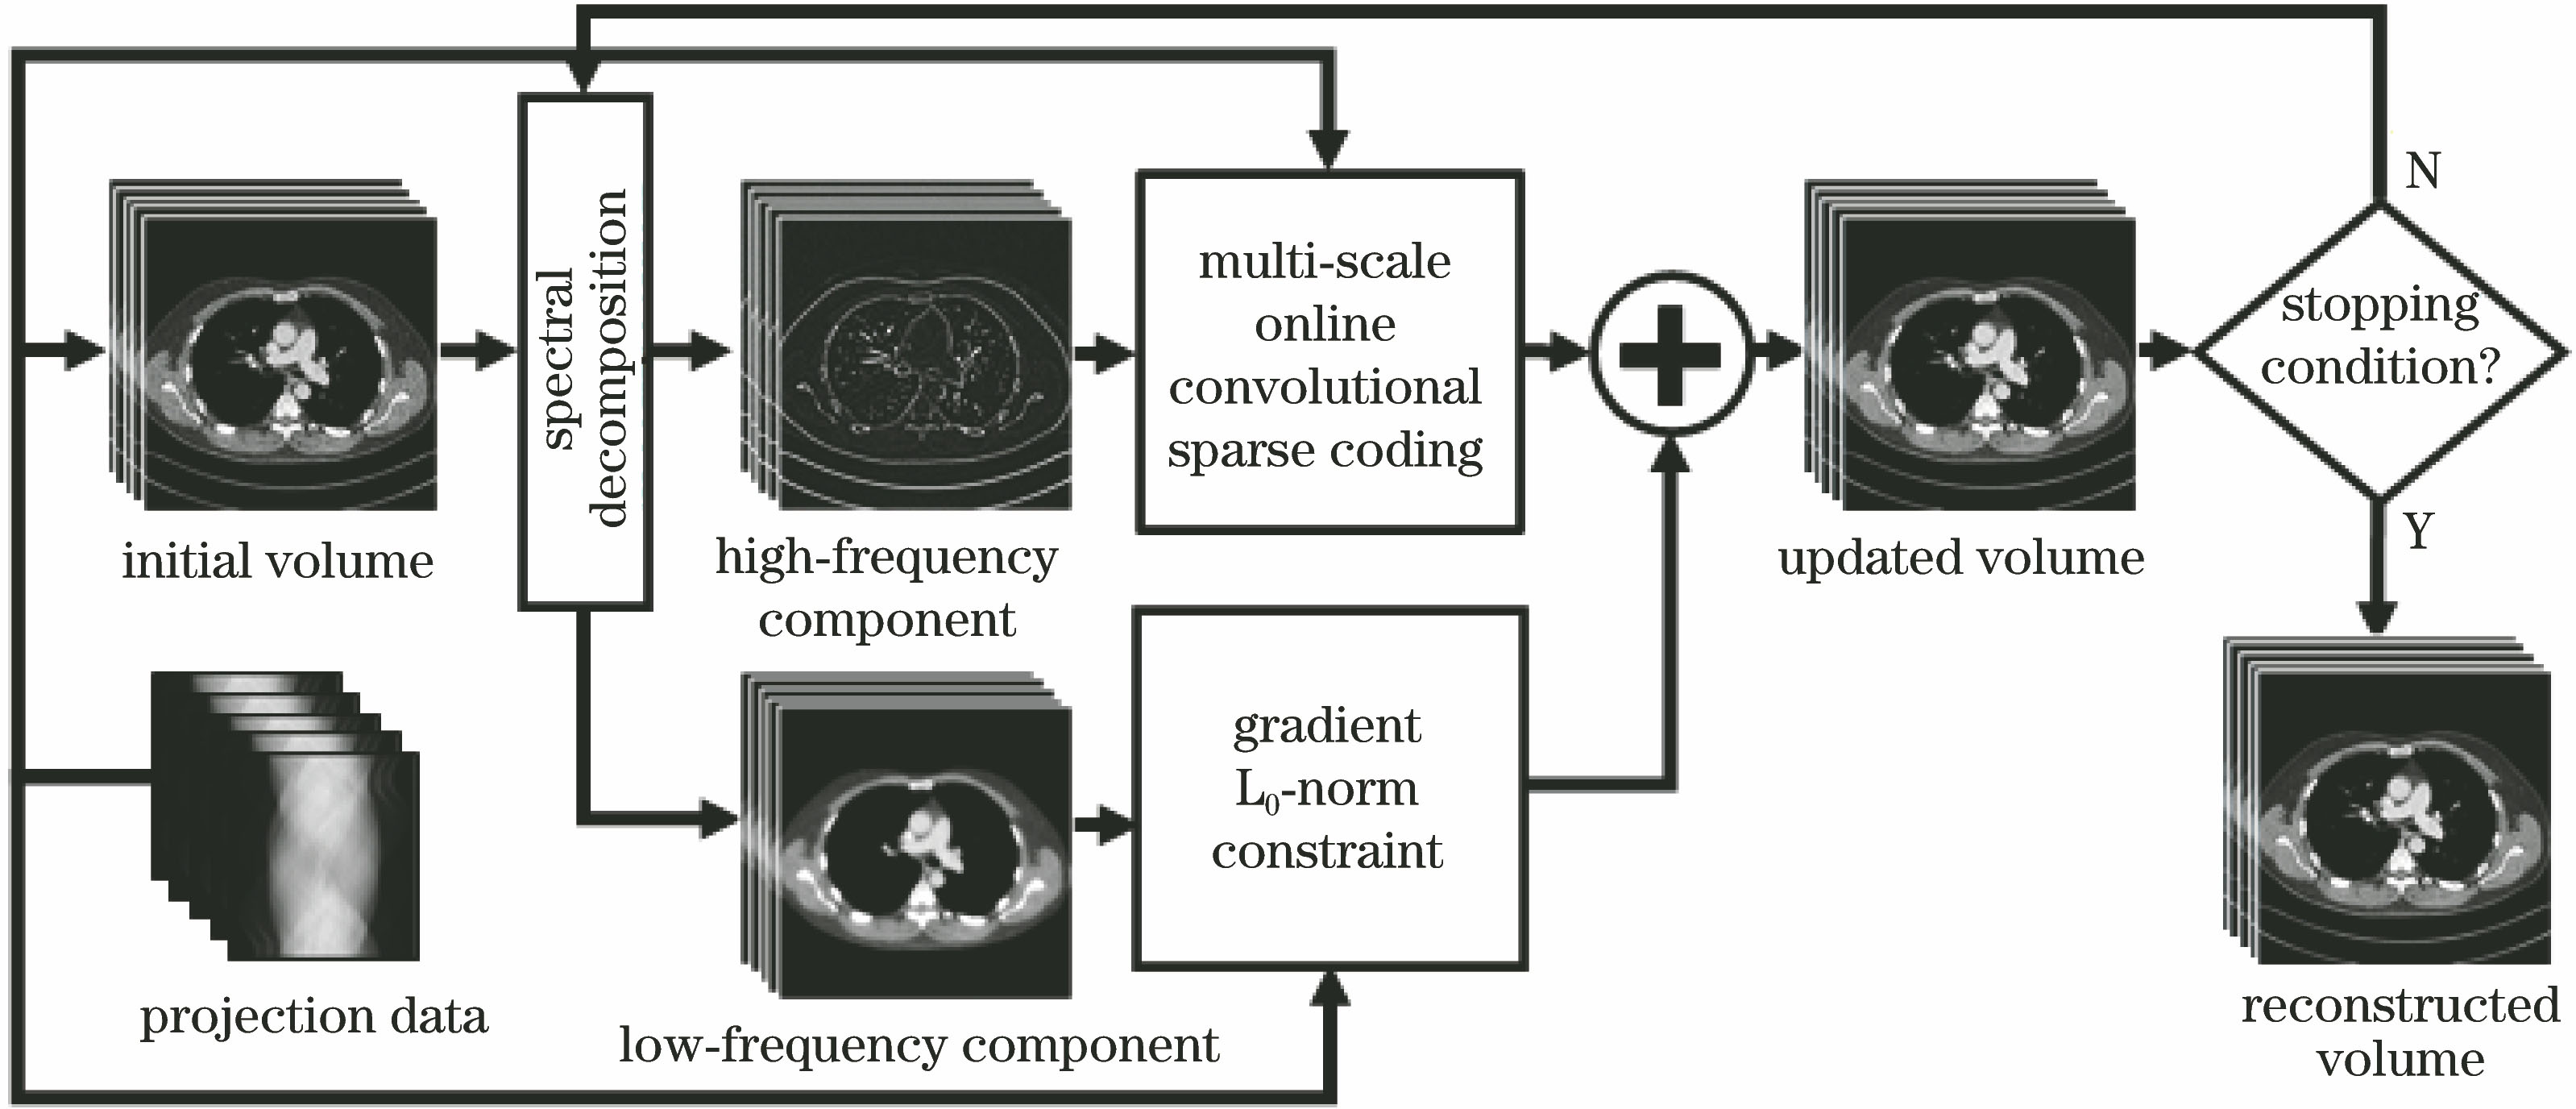 Multi-scale online convolutional sparse coding and gradient L0 norm LDCT 3D reconstruction algorithm flow